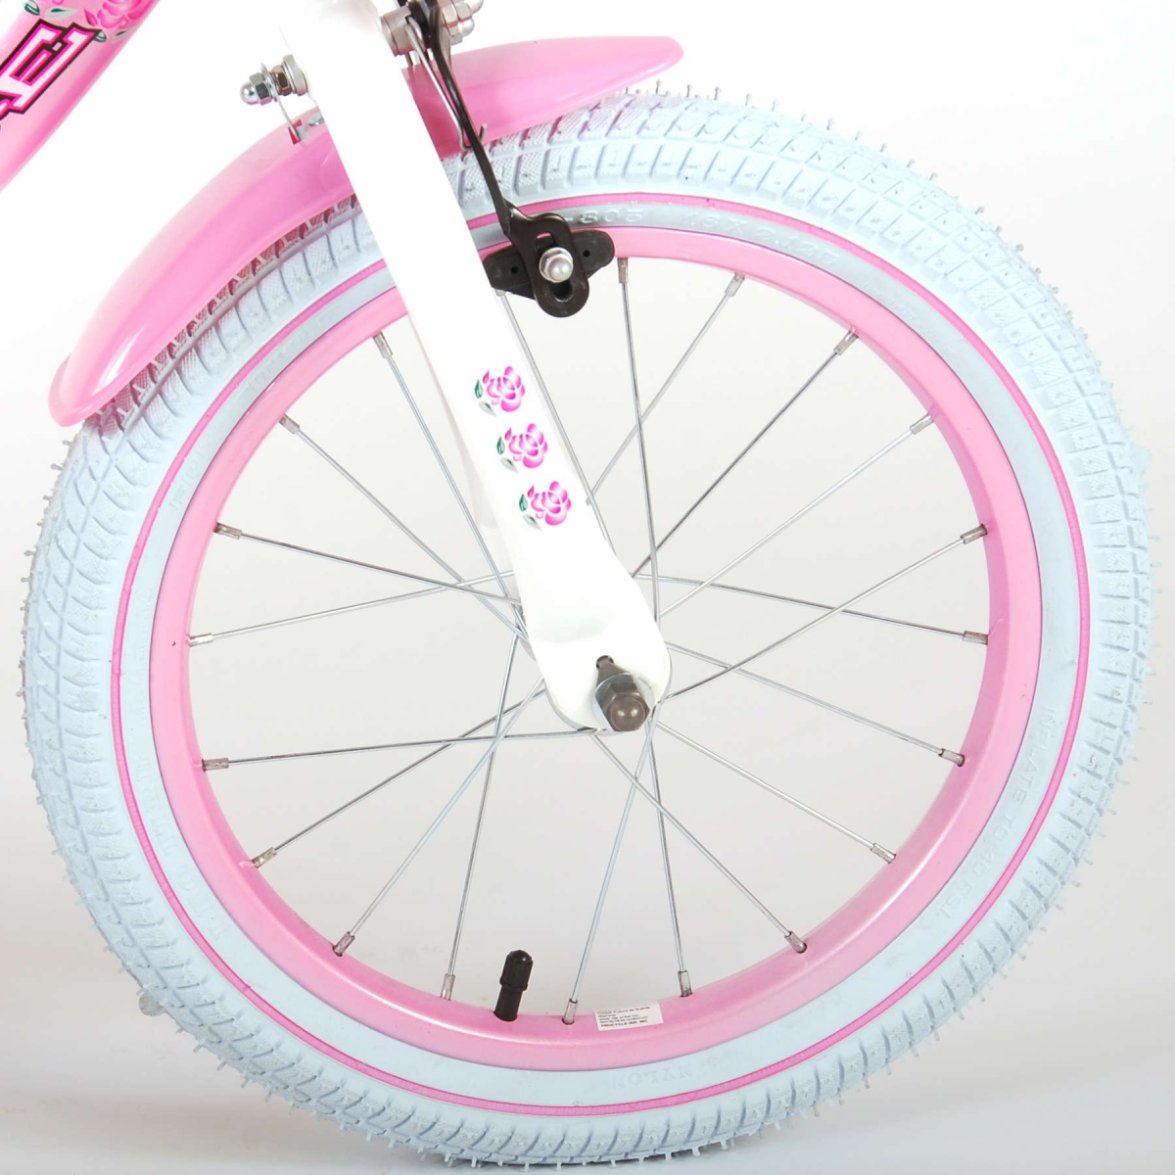 Vaikiškas dviratis VOLARE 16" Rose (81611) rožinis/baltas - 2